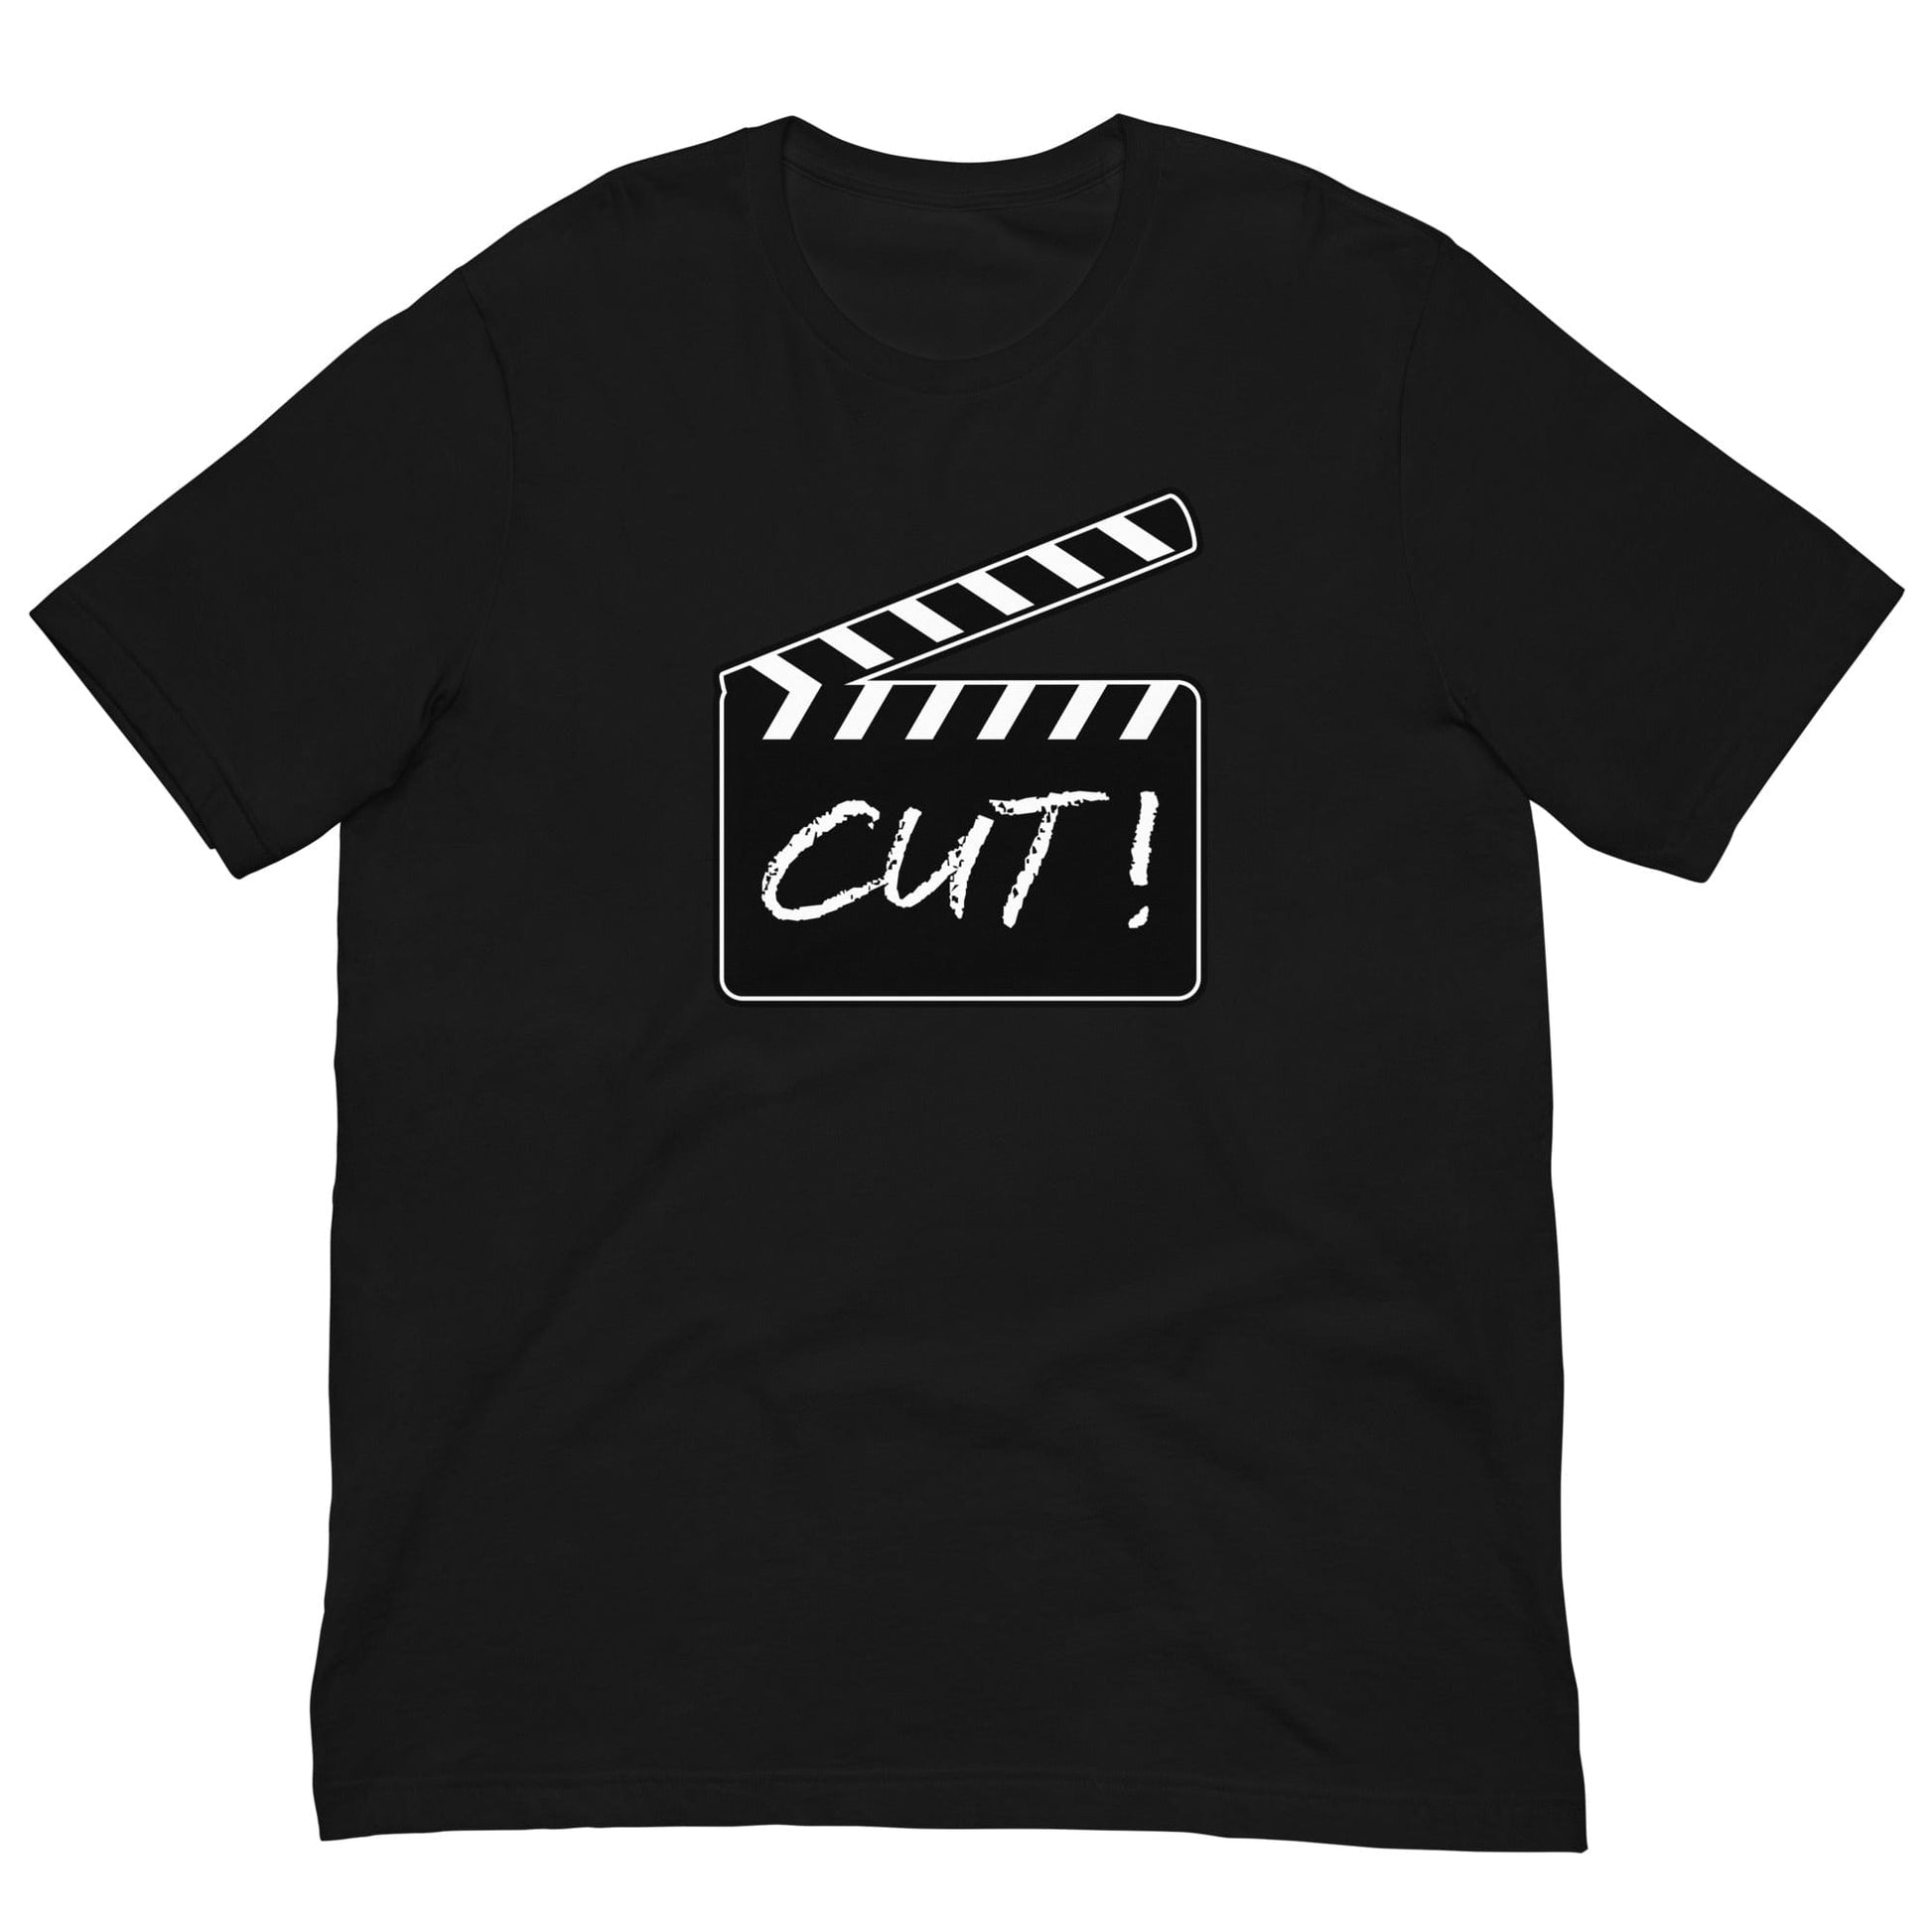 Film Clapper Cut! T-shirt Black / XS